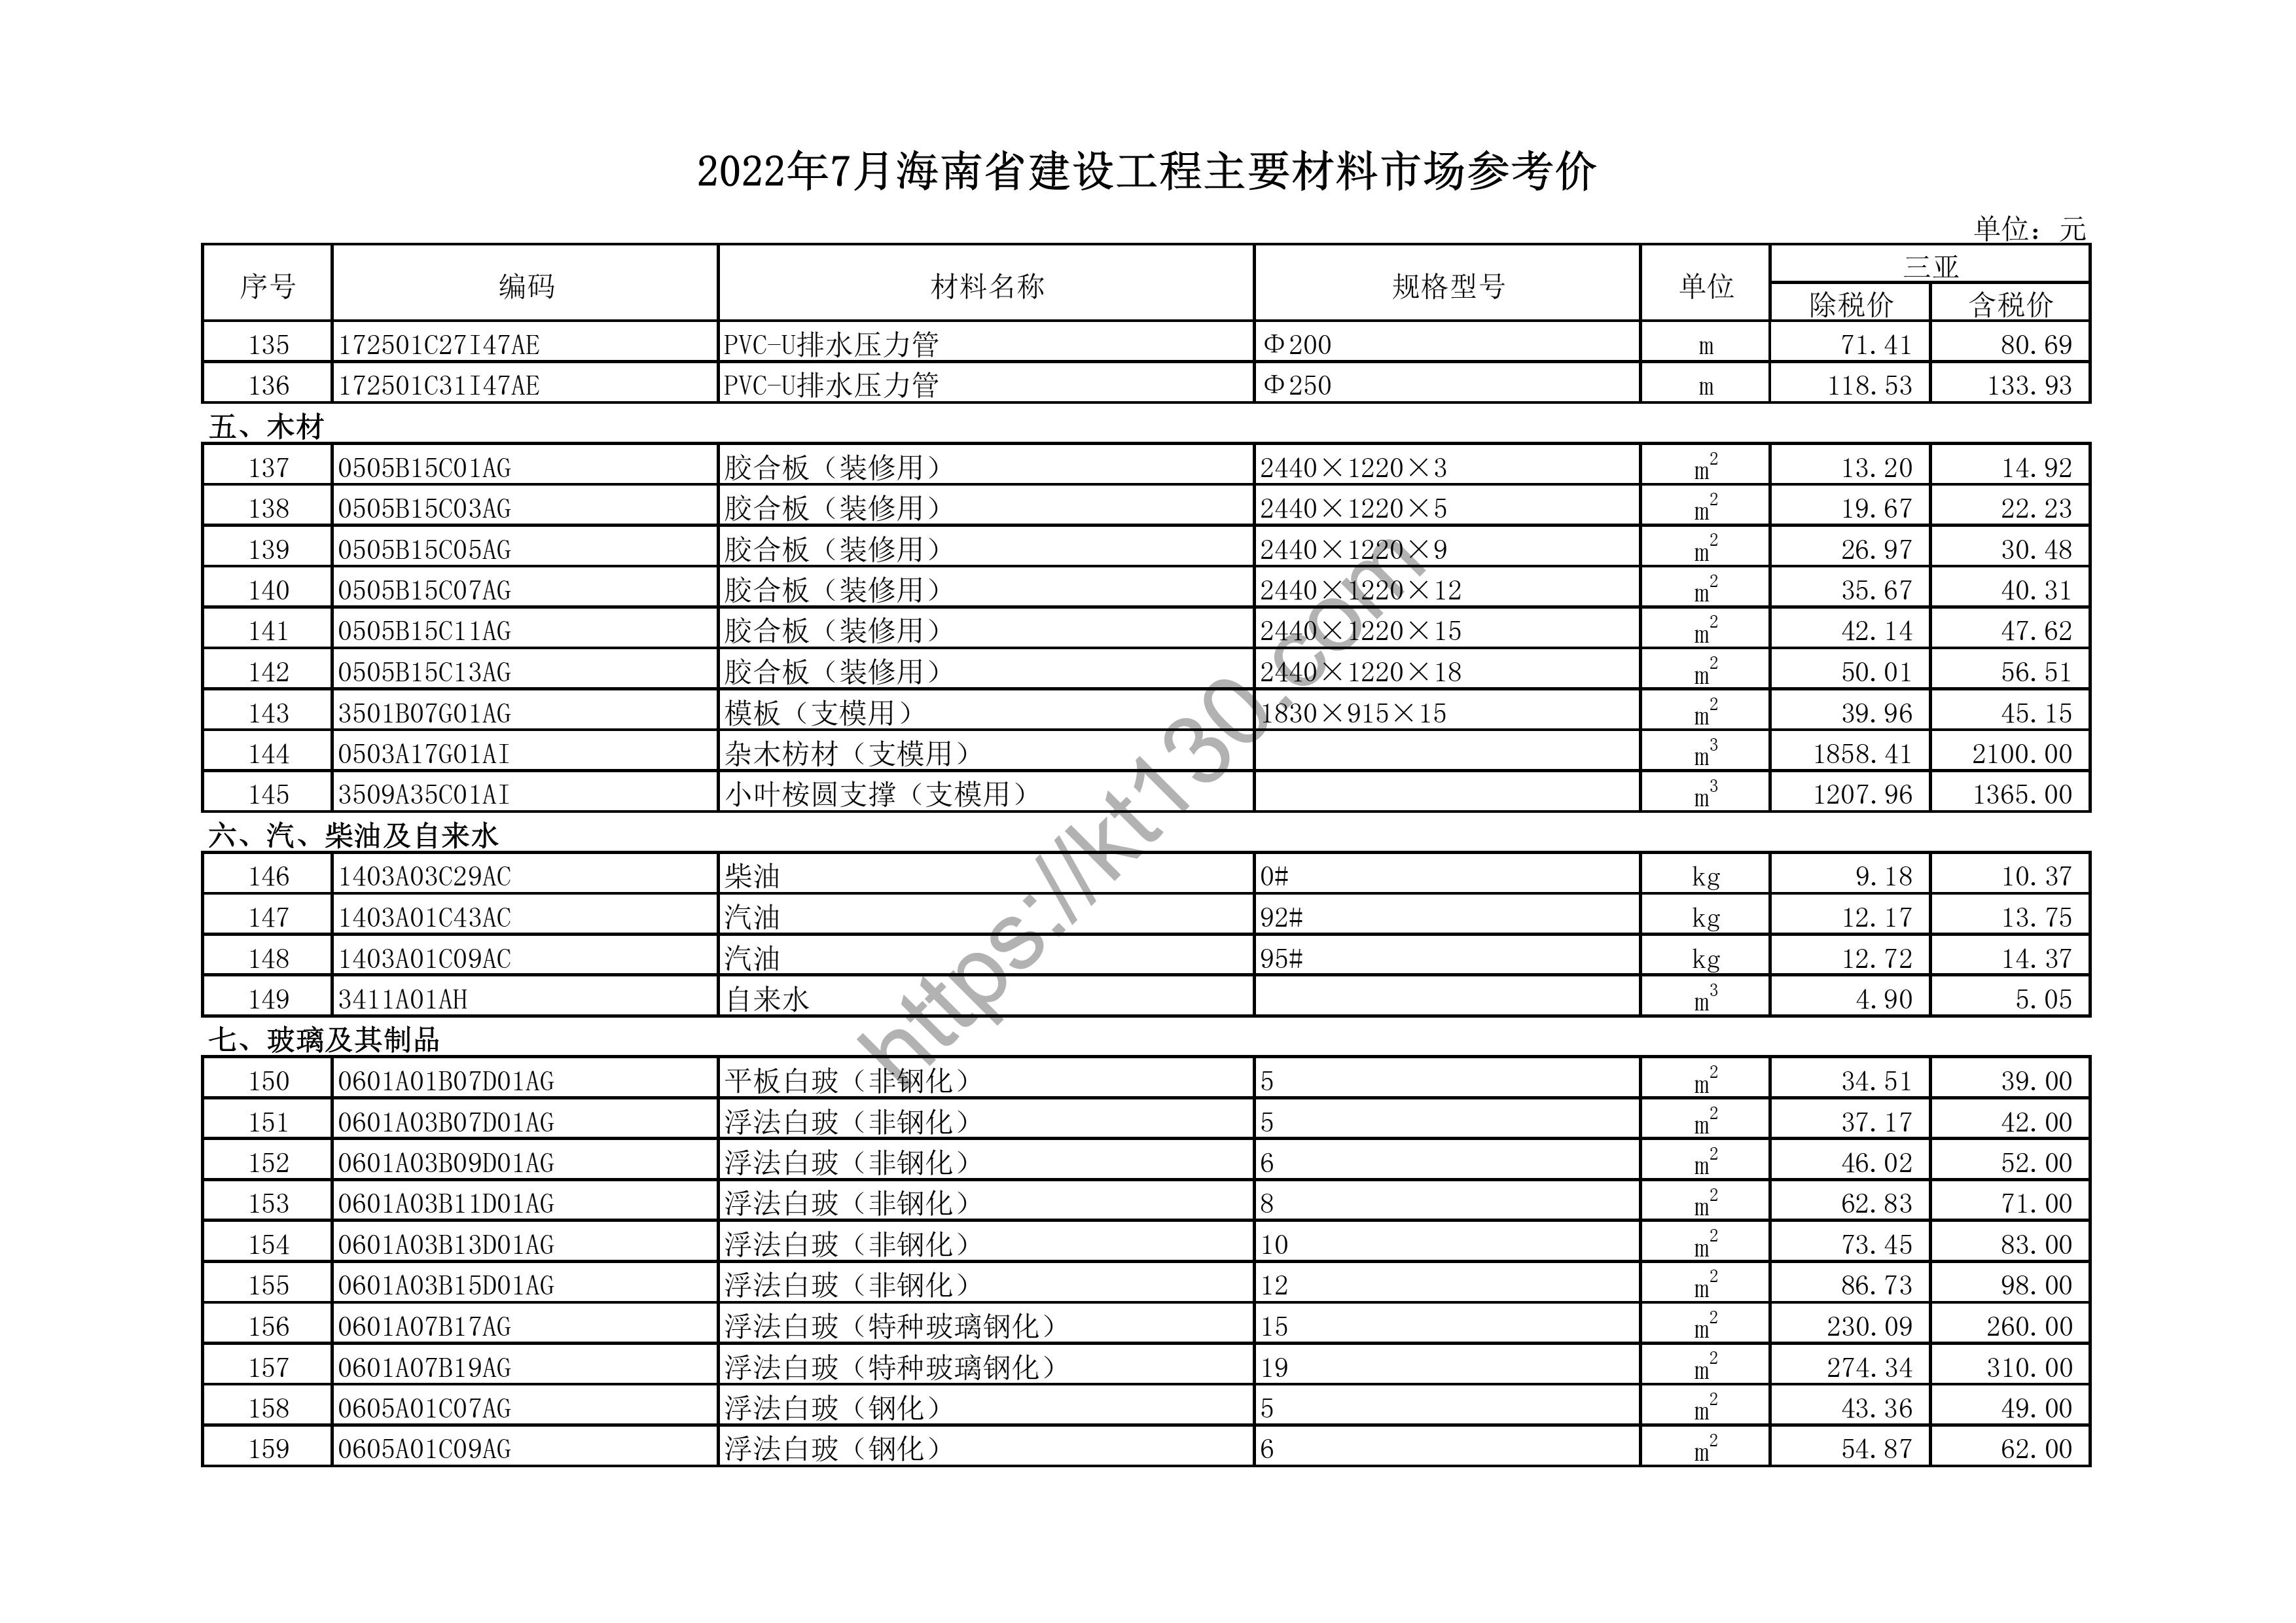 海南省2022年7月建筑材料价_钢化玻璃_44754